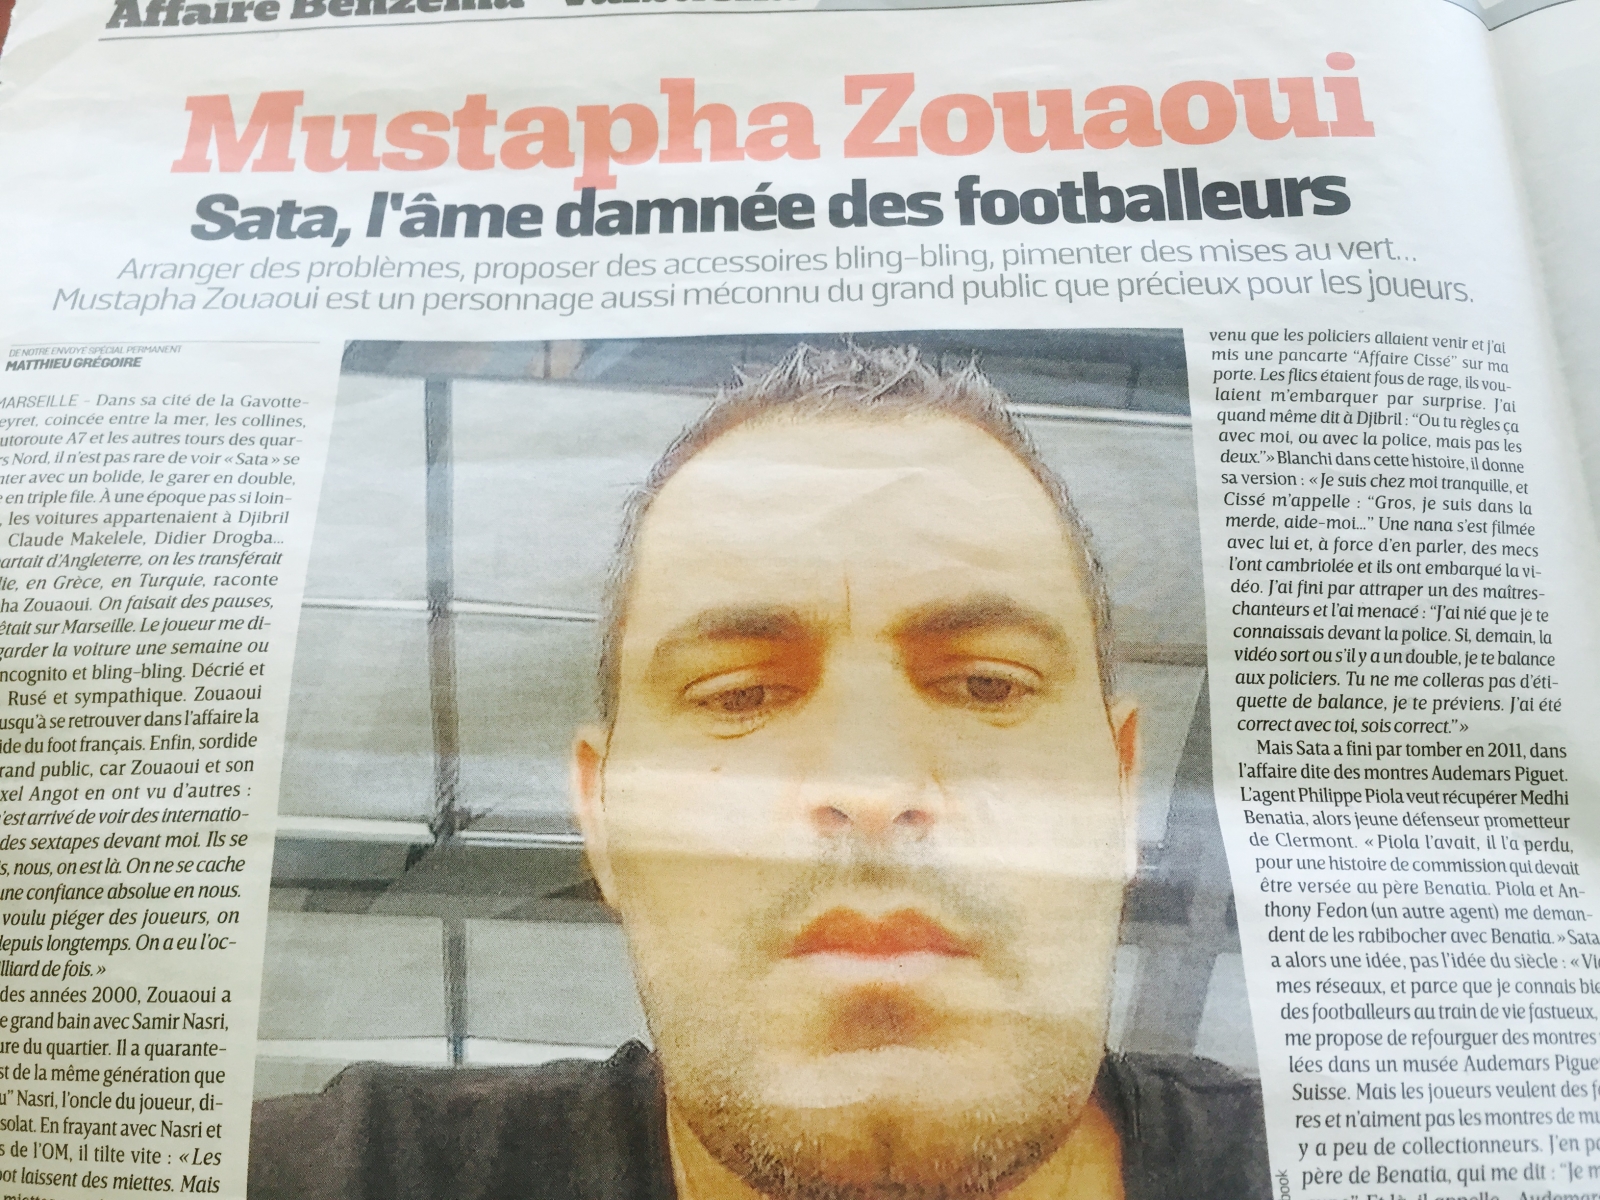 Le quotidien sportif a recueilli les propos de "Sata". L'auteur de l'interview précise cependant qu'il ne faut certainement pas prendre pour argent comptant les propos du suspect emprisonné il y a quelques années en Suisse.